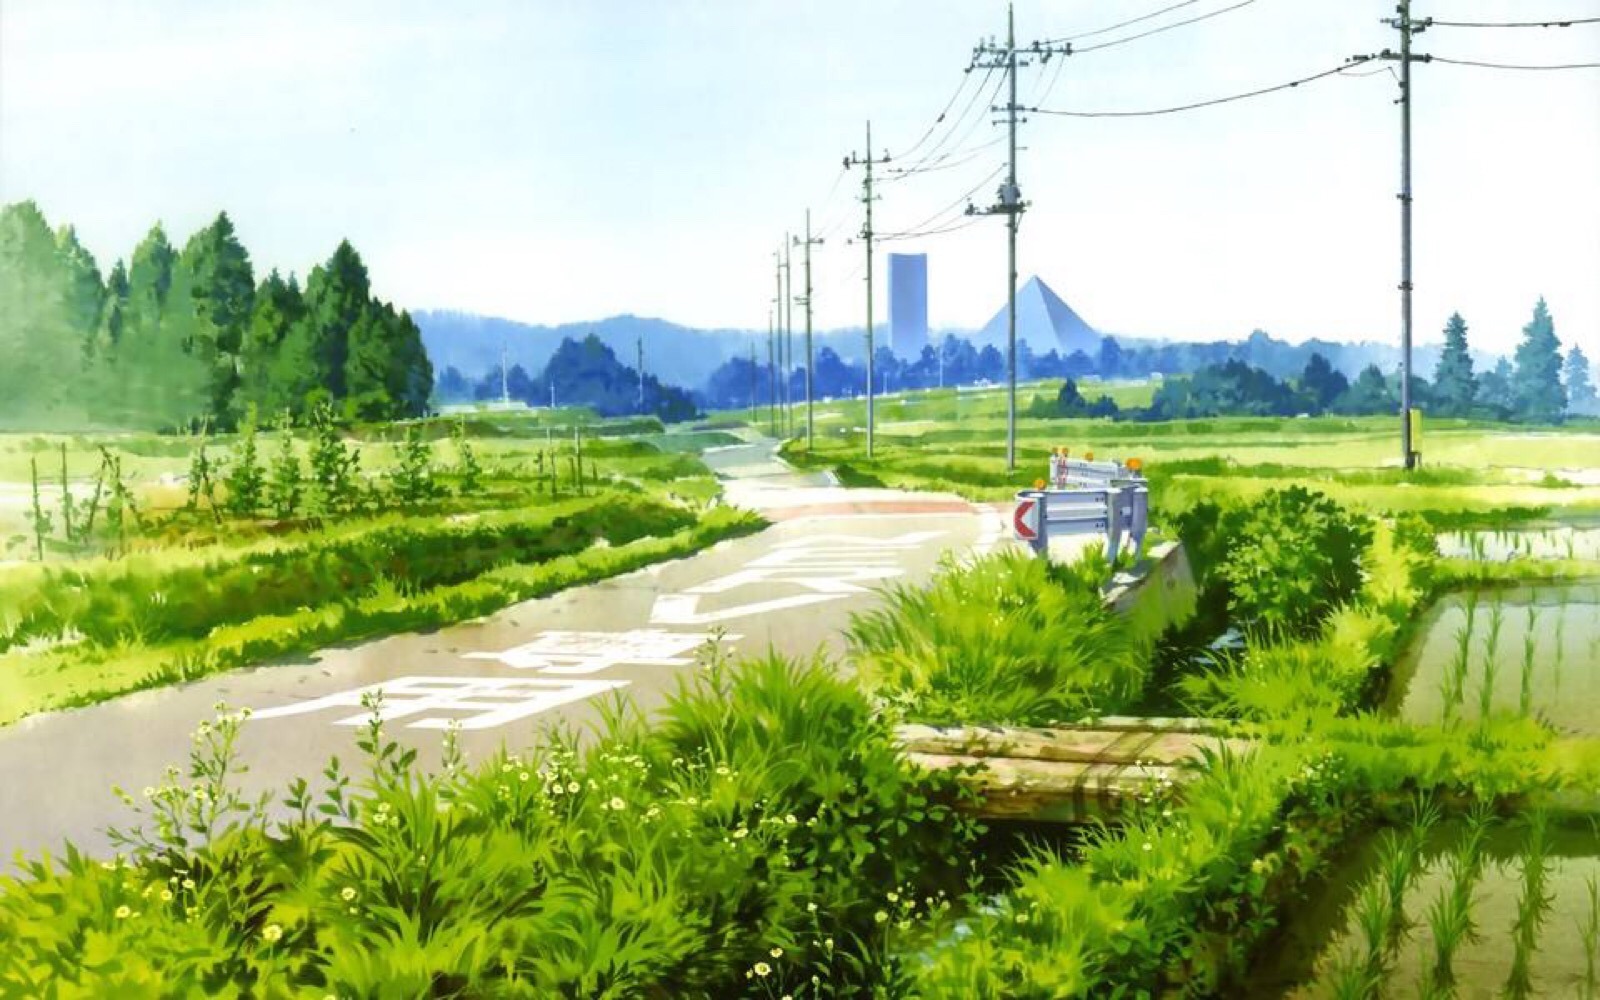 宫崎骏风景 - 堆糖,美图壁纸兴趣社区